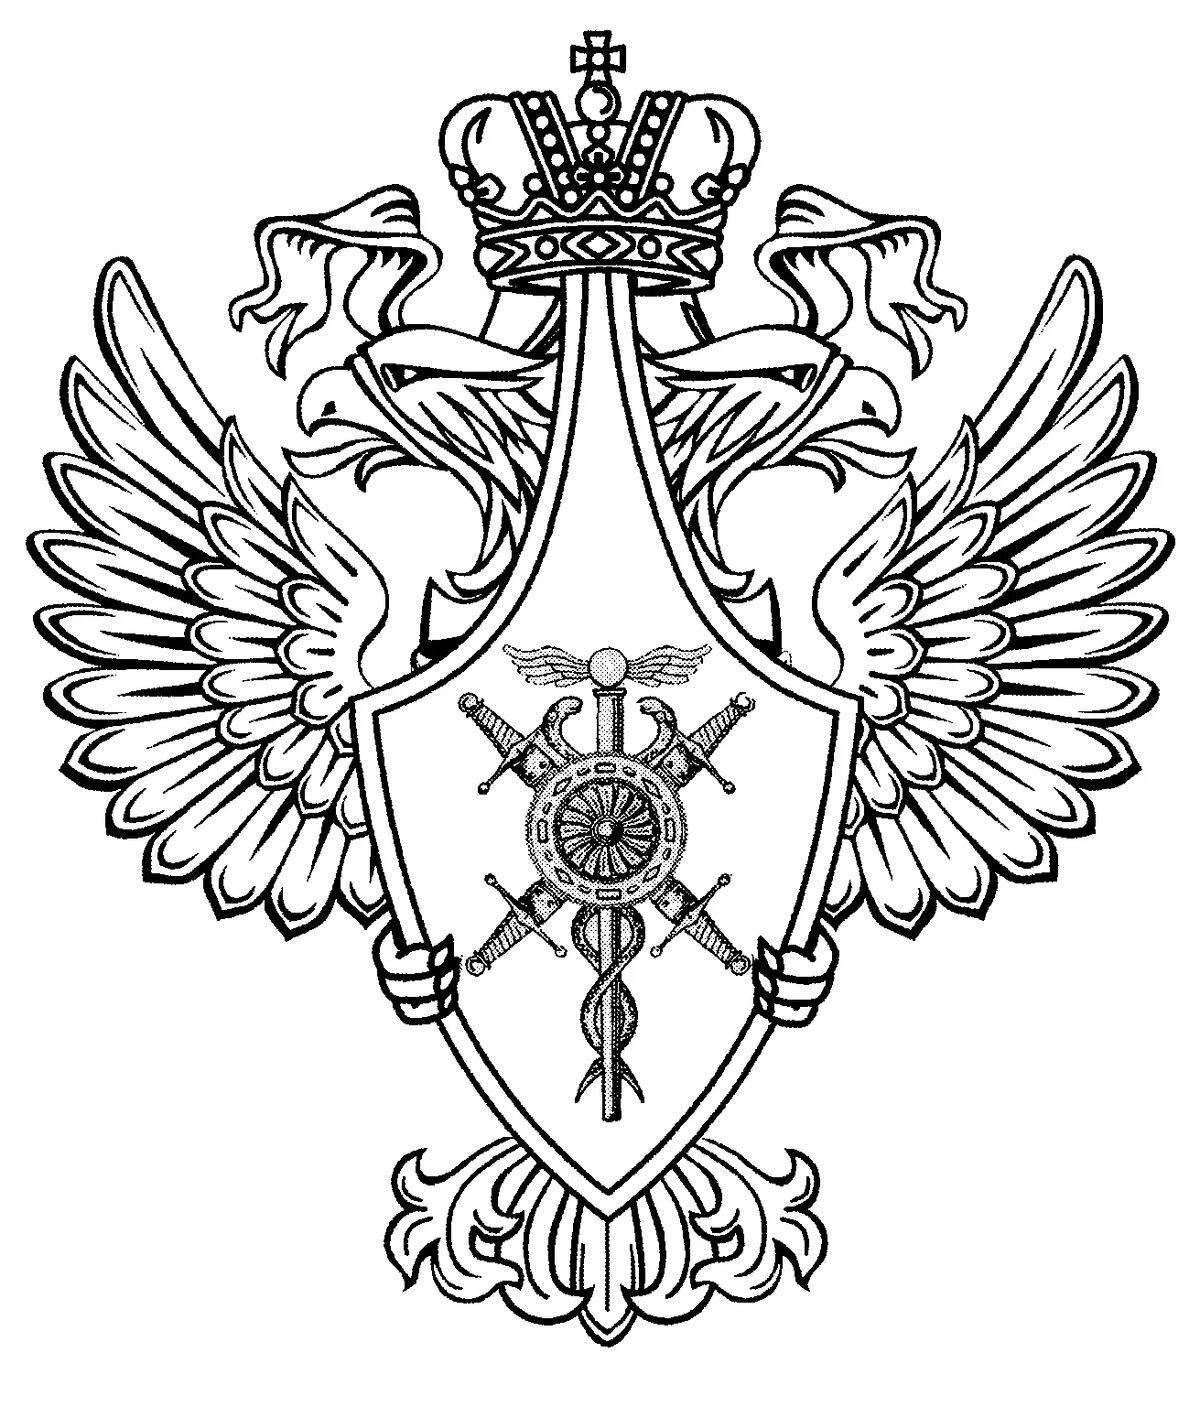 Прекрасный герб российской федерации для школьников